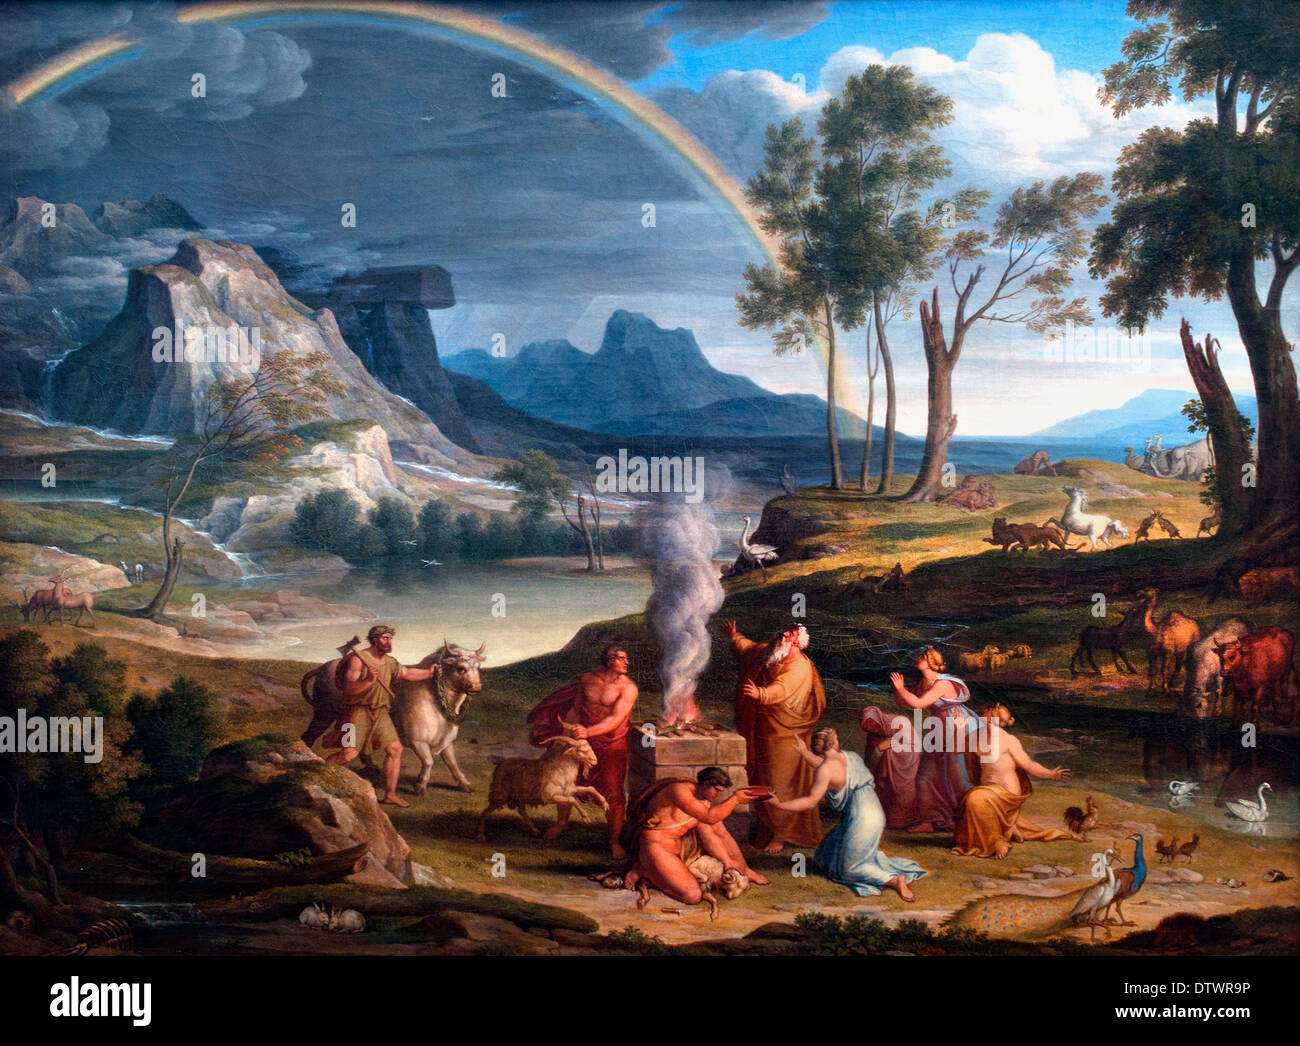 Paysage avec Noé offrant un sacrifice de reconnaissance, Joseph Anton Koch,1768-1839 Allemand Allemagne Banque D'Images